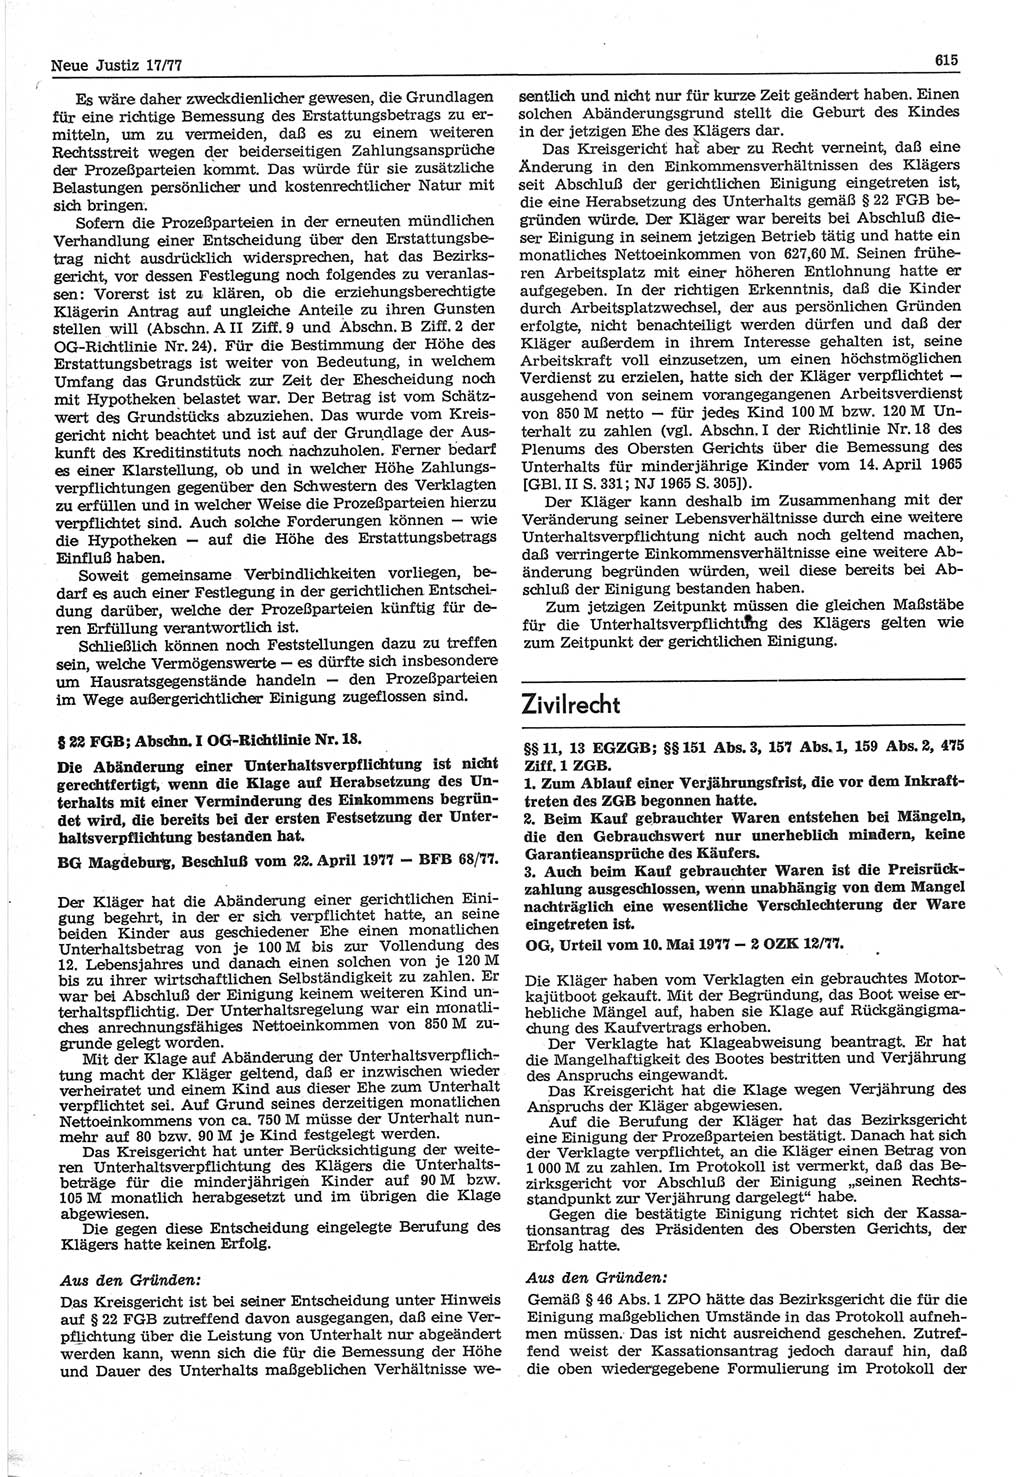 Neue Justiz (NJ), Zeitschrift für Recht und Rechtswissenschaft-Zeitschrift, sozialistisches Recht und Gesetzlichkeit, 31. Jahrgang 1977, Seite 615 (NJ DDR 1977, S. 615)